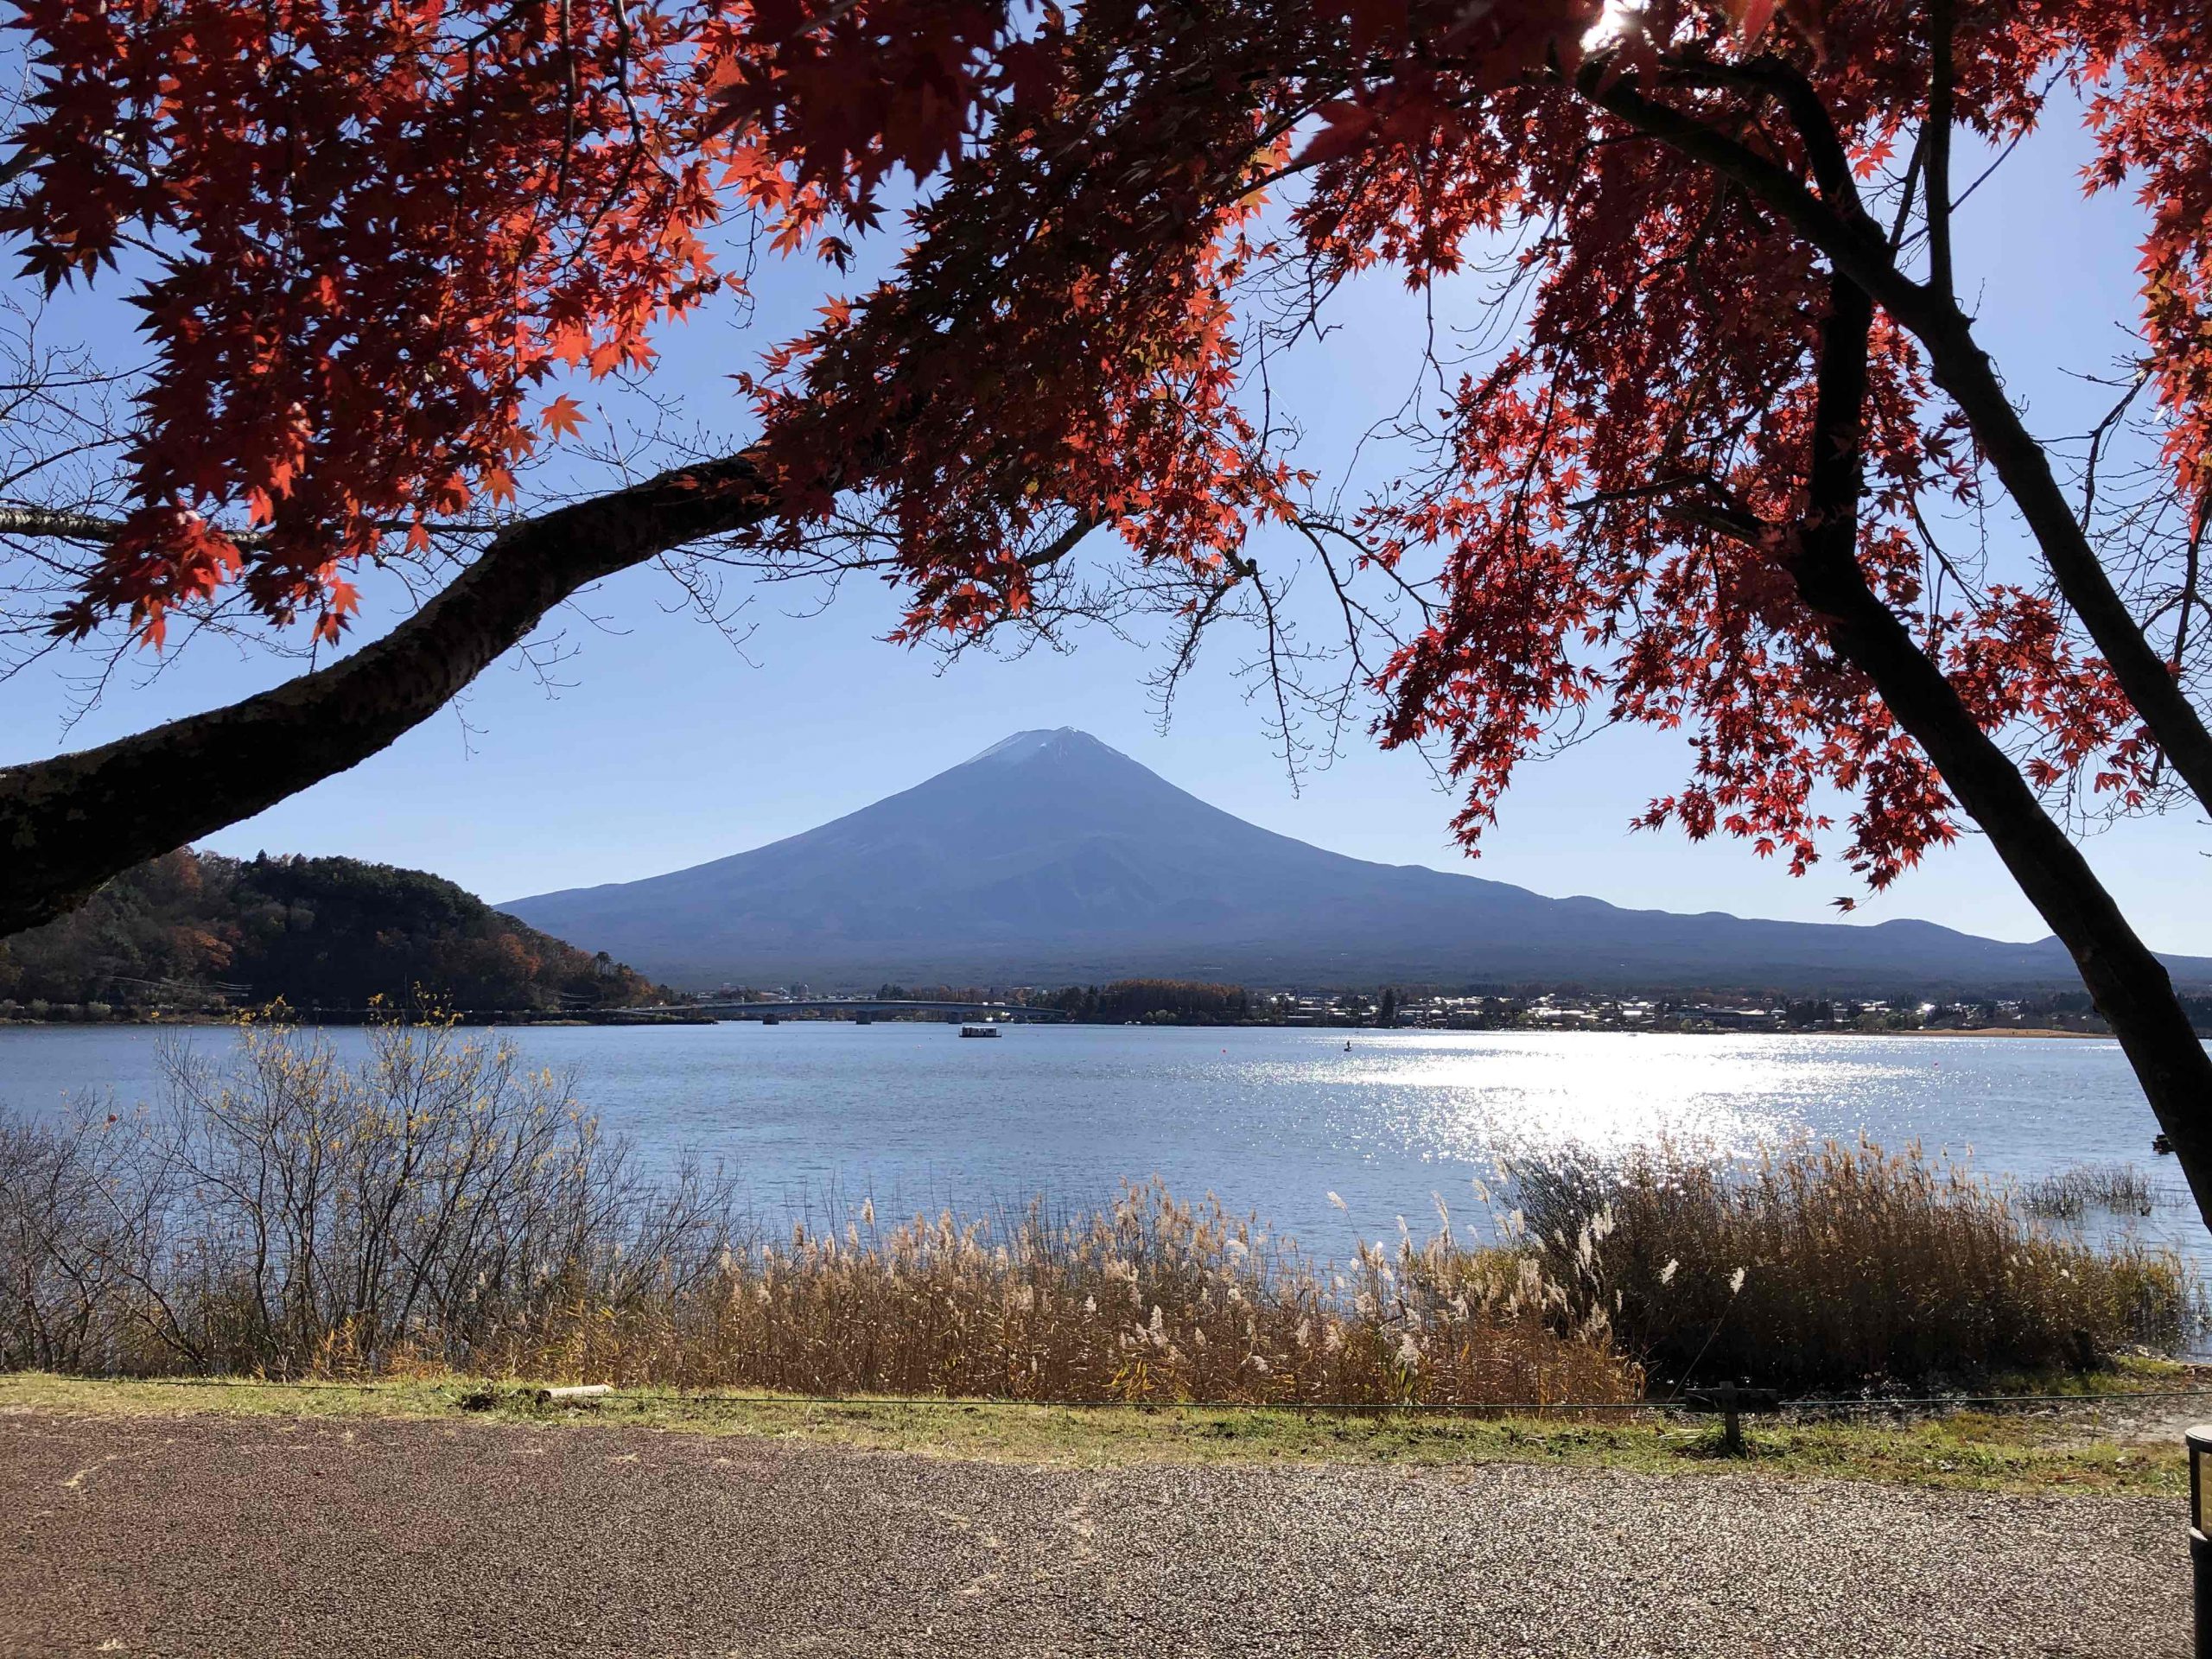 Mount Fuji as seen from Lake Kawaguchiko